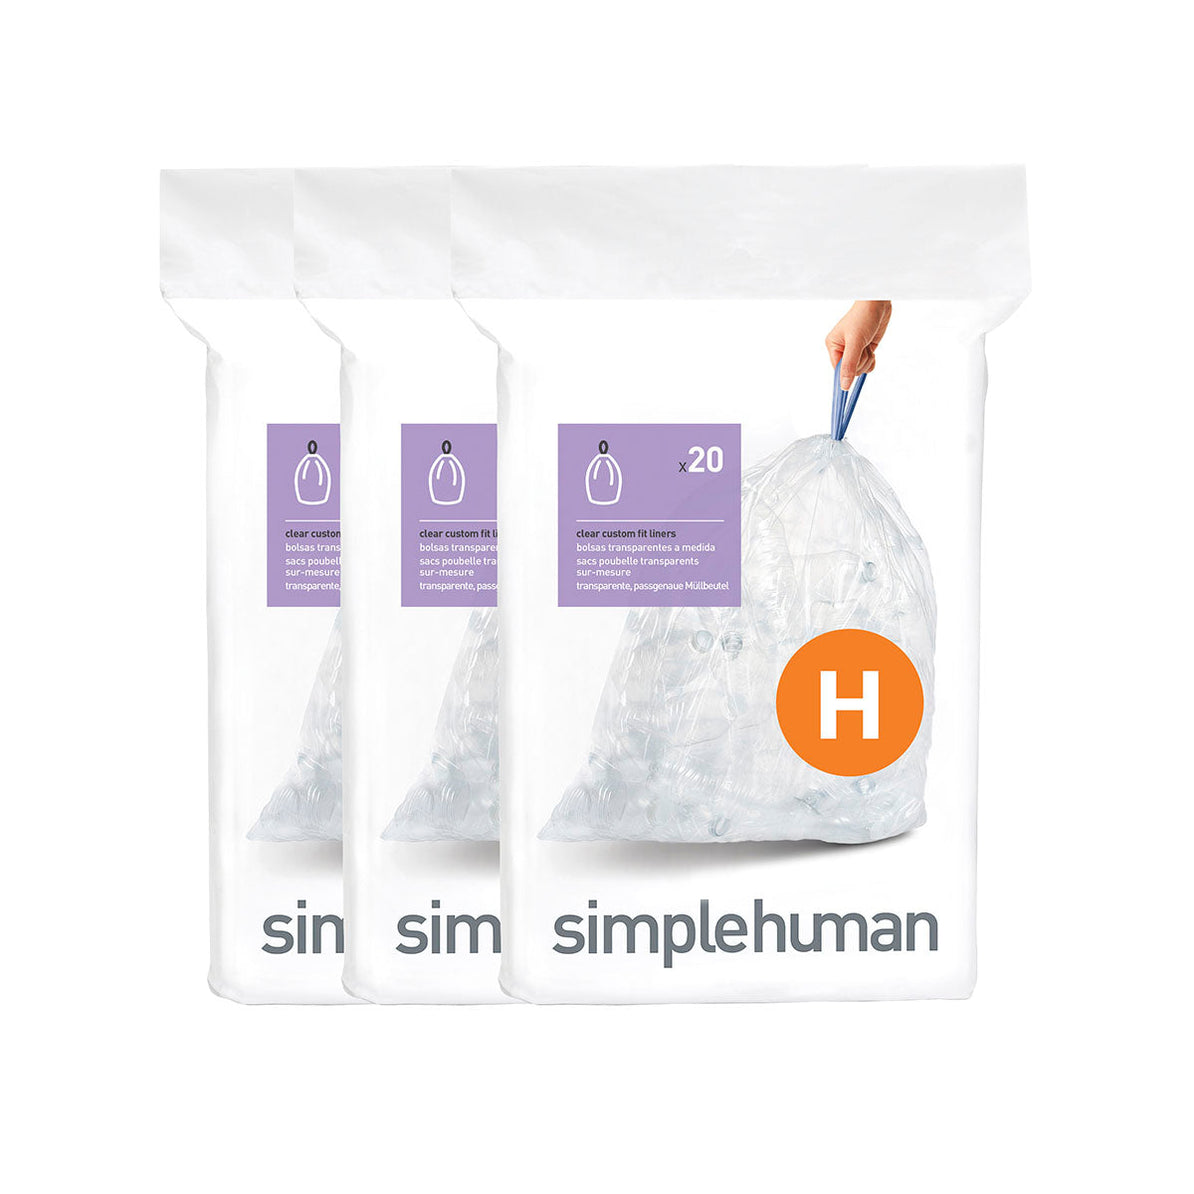 שקיות אשפה לפח 30 ליטר (H) דגם Simplehuman - CW0258 - סימפליומן